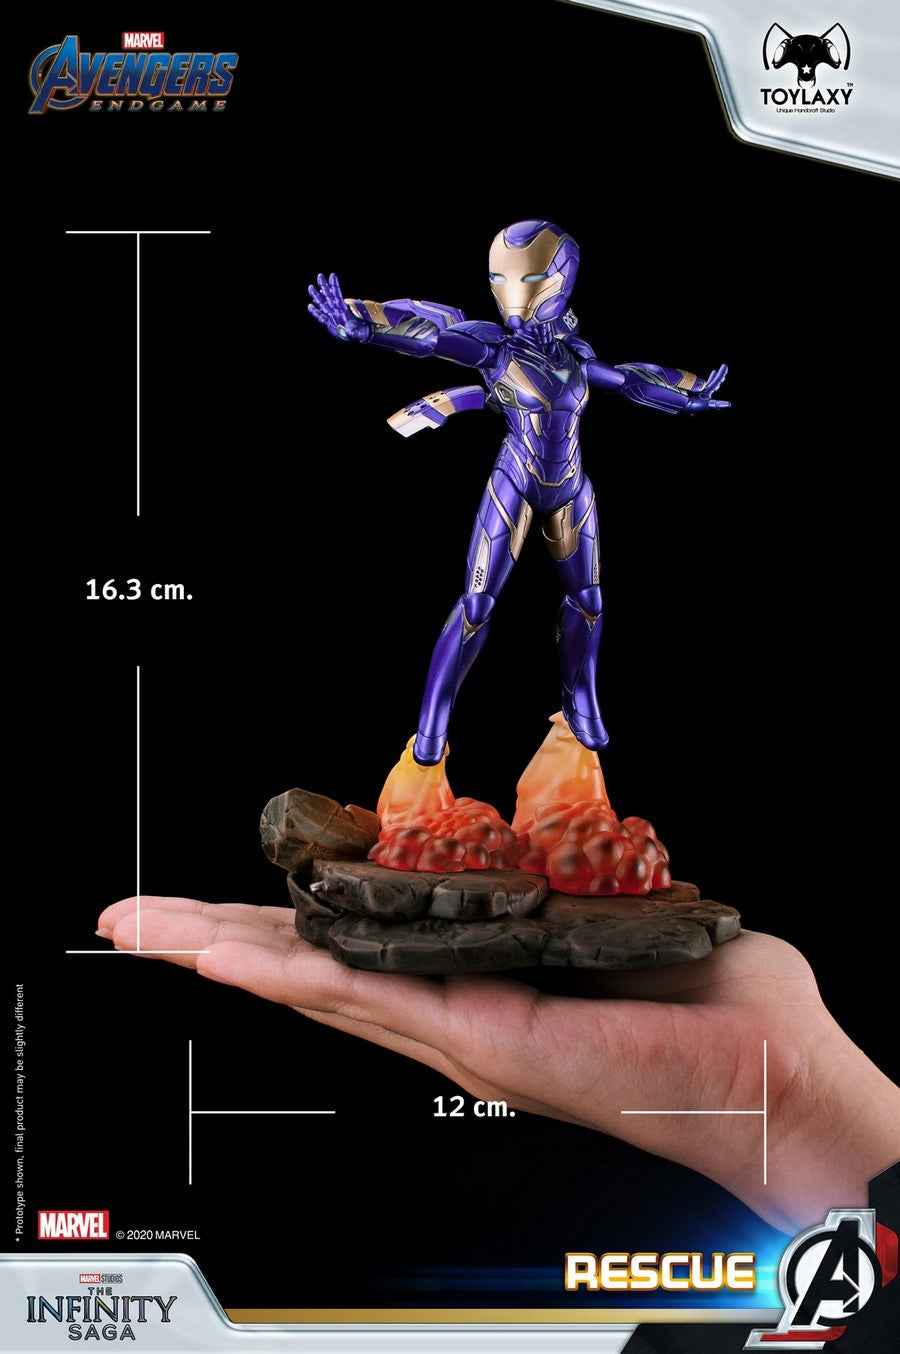 Avengers 4: Endgame - Doctor Strange | Marvel's Avengers: Endgame Collectible Figure - size